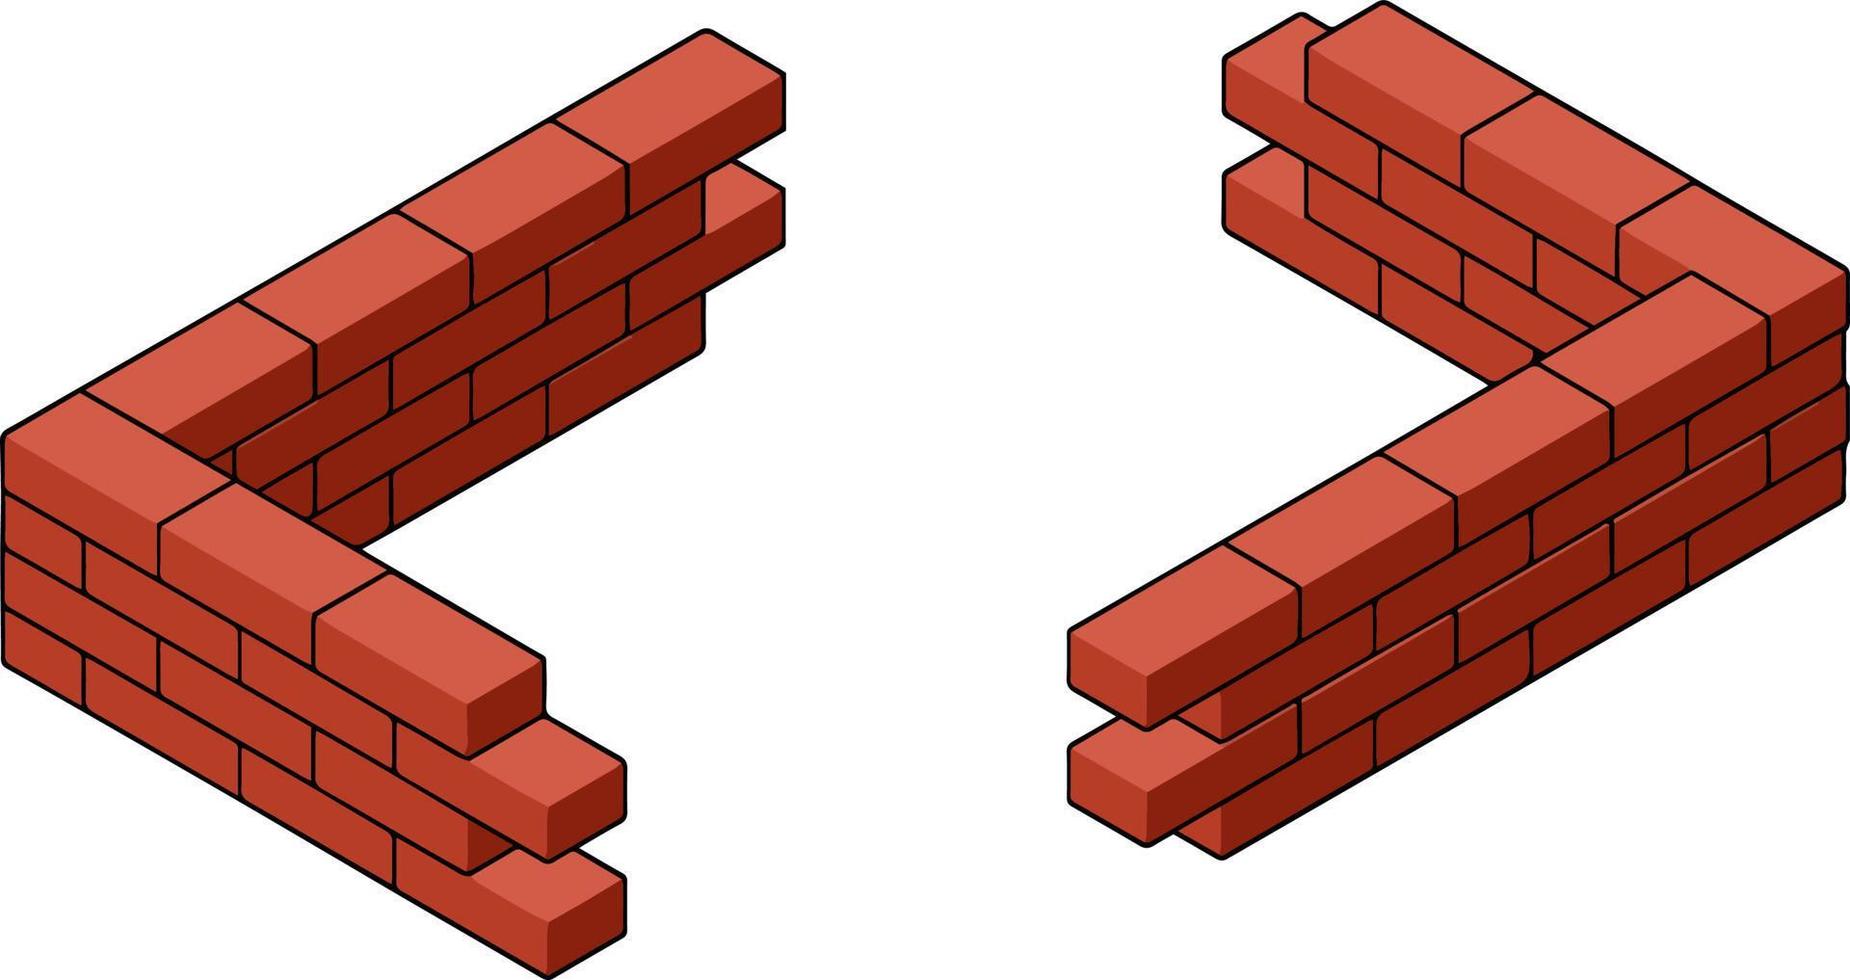 pared de ladrillo rojo de la casa. elemento de construcción de edificios. esquina del objeto de piedra. ilustración isométrica. símbolo de protección y seguridad vector